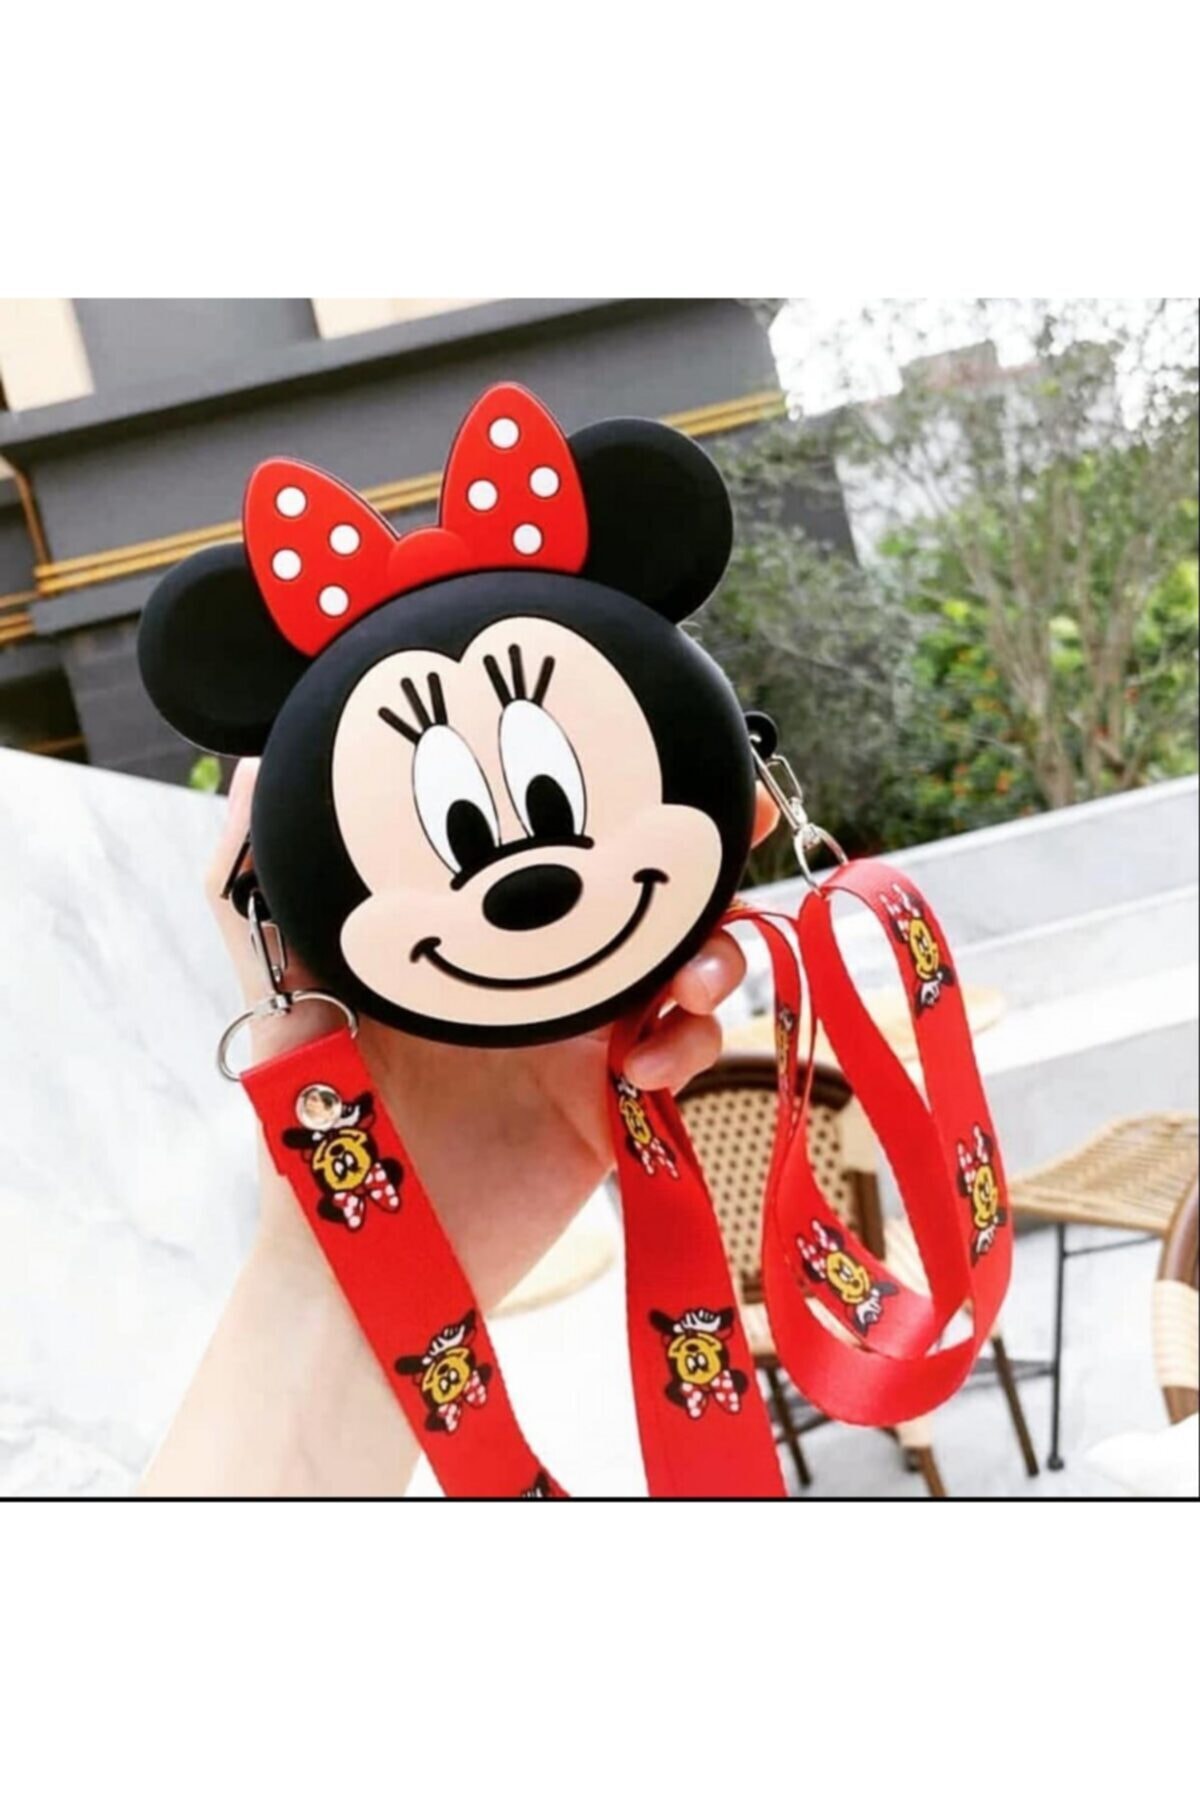 NETAVANTAJ Omuz Askılı Çanta Mickey Mouse Minnie Mouse Tasarım Silikon